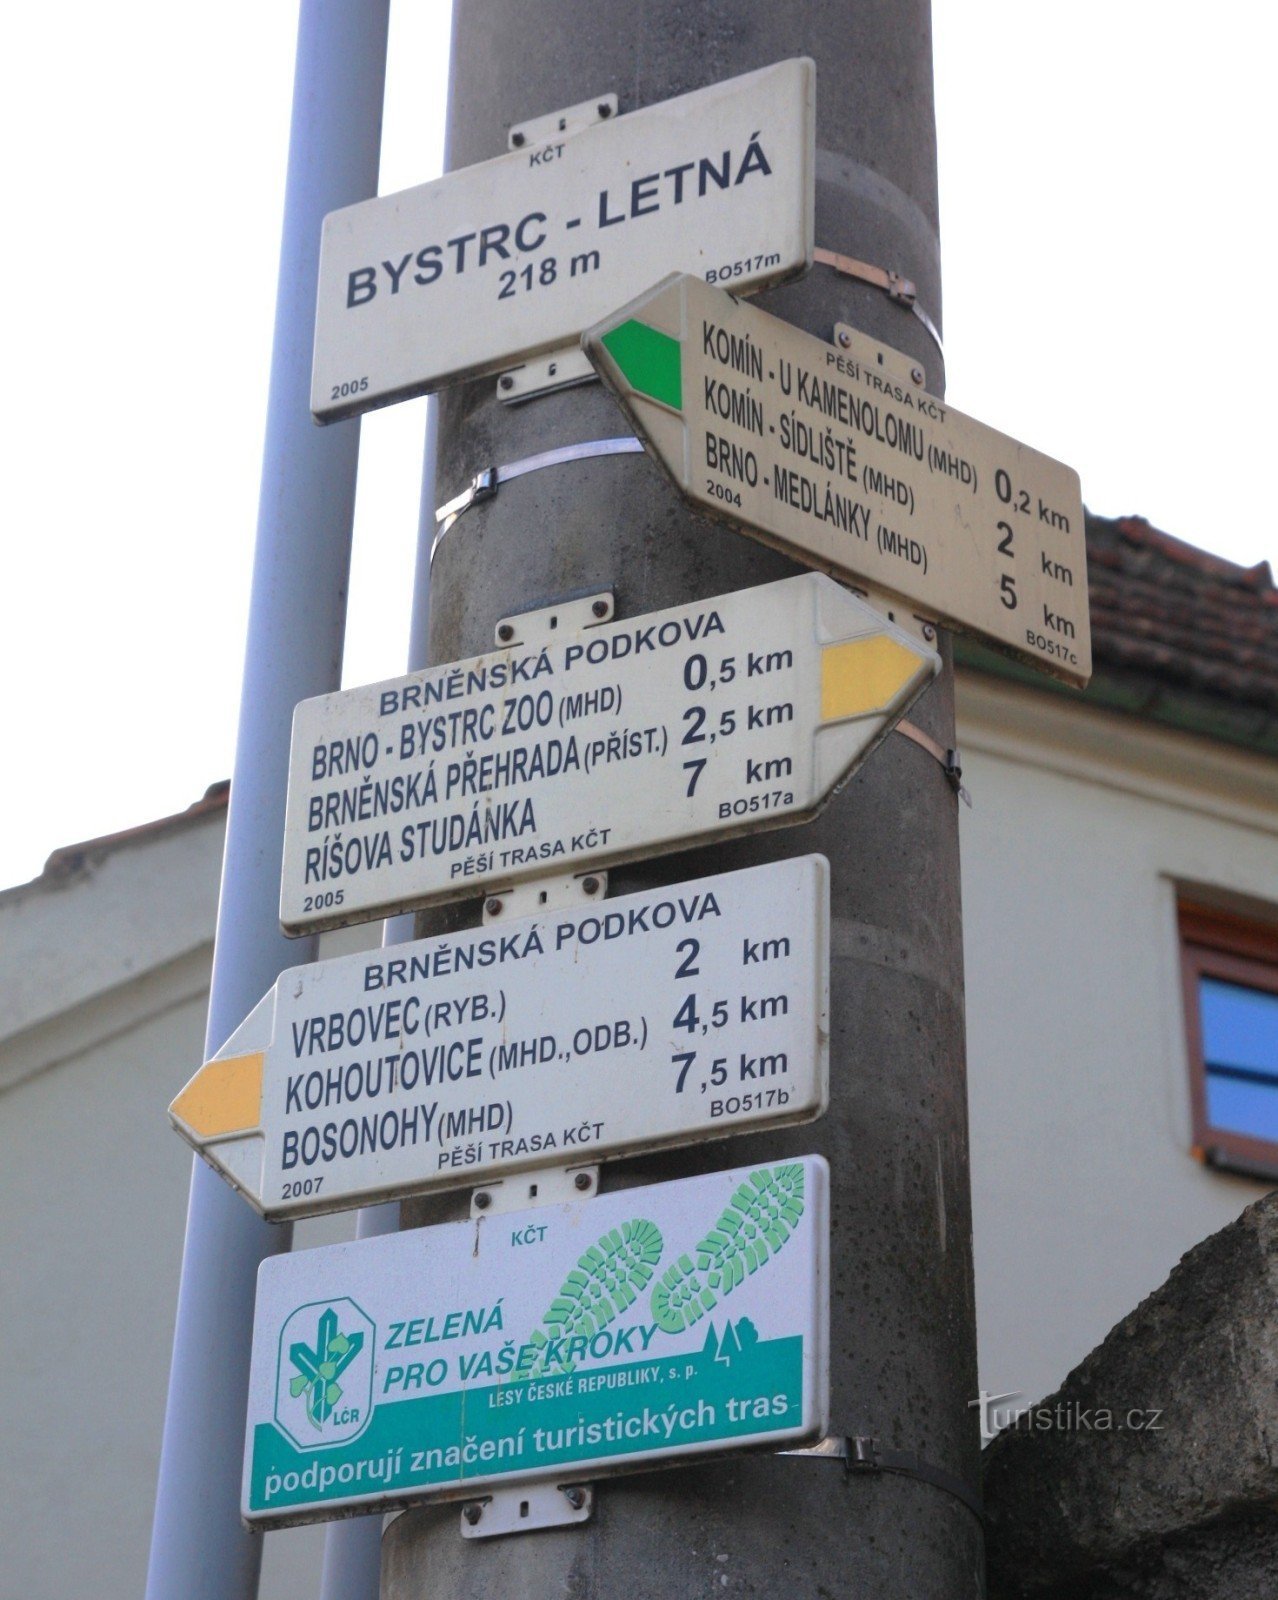 Răscruce turistică Bystrc-Letná